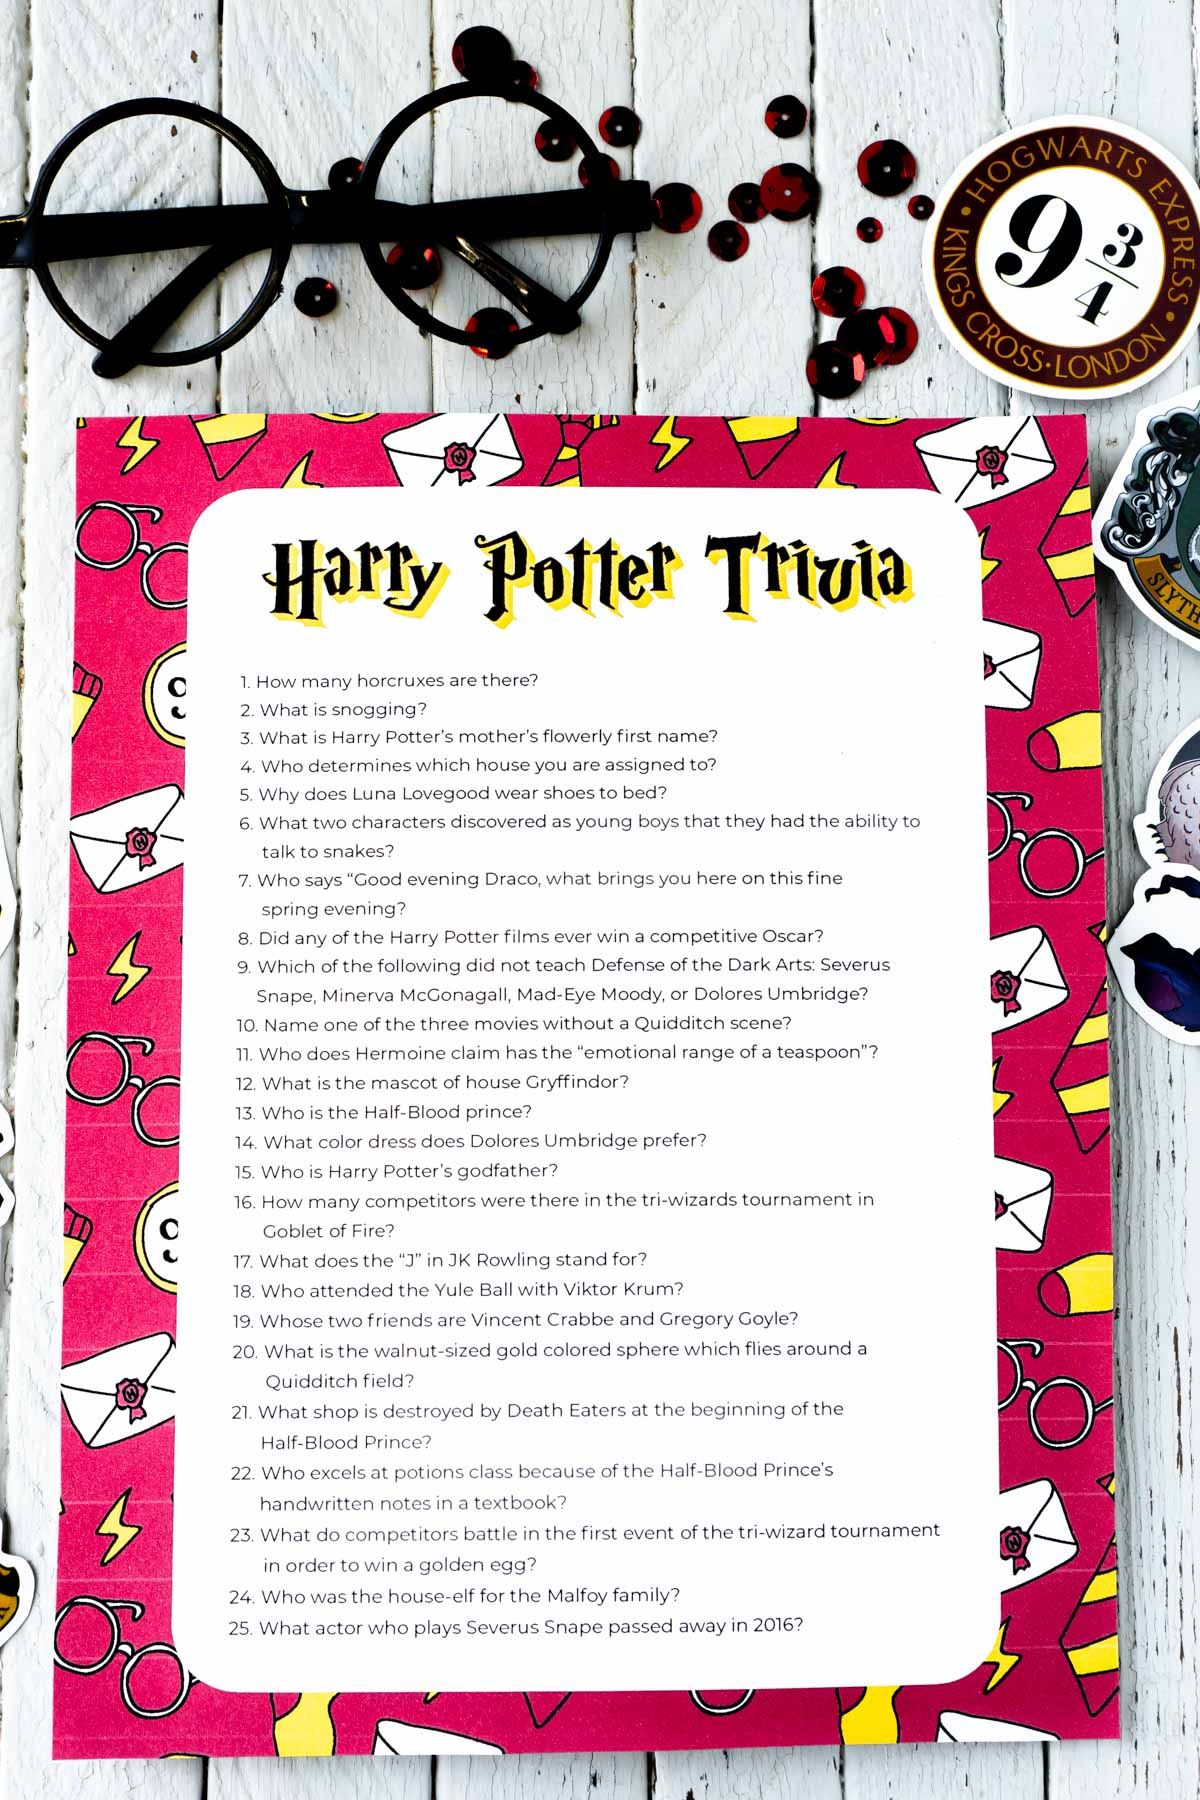 Harry Potter trivia vragen met een Harry Potter-bril op de achtergrond